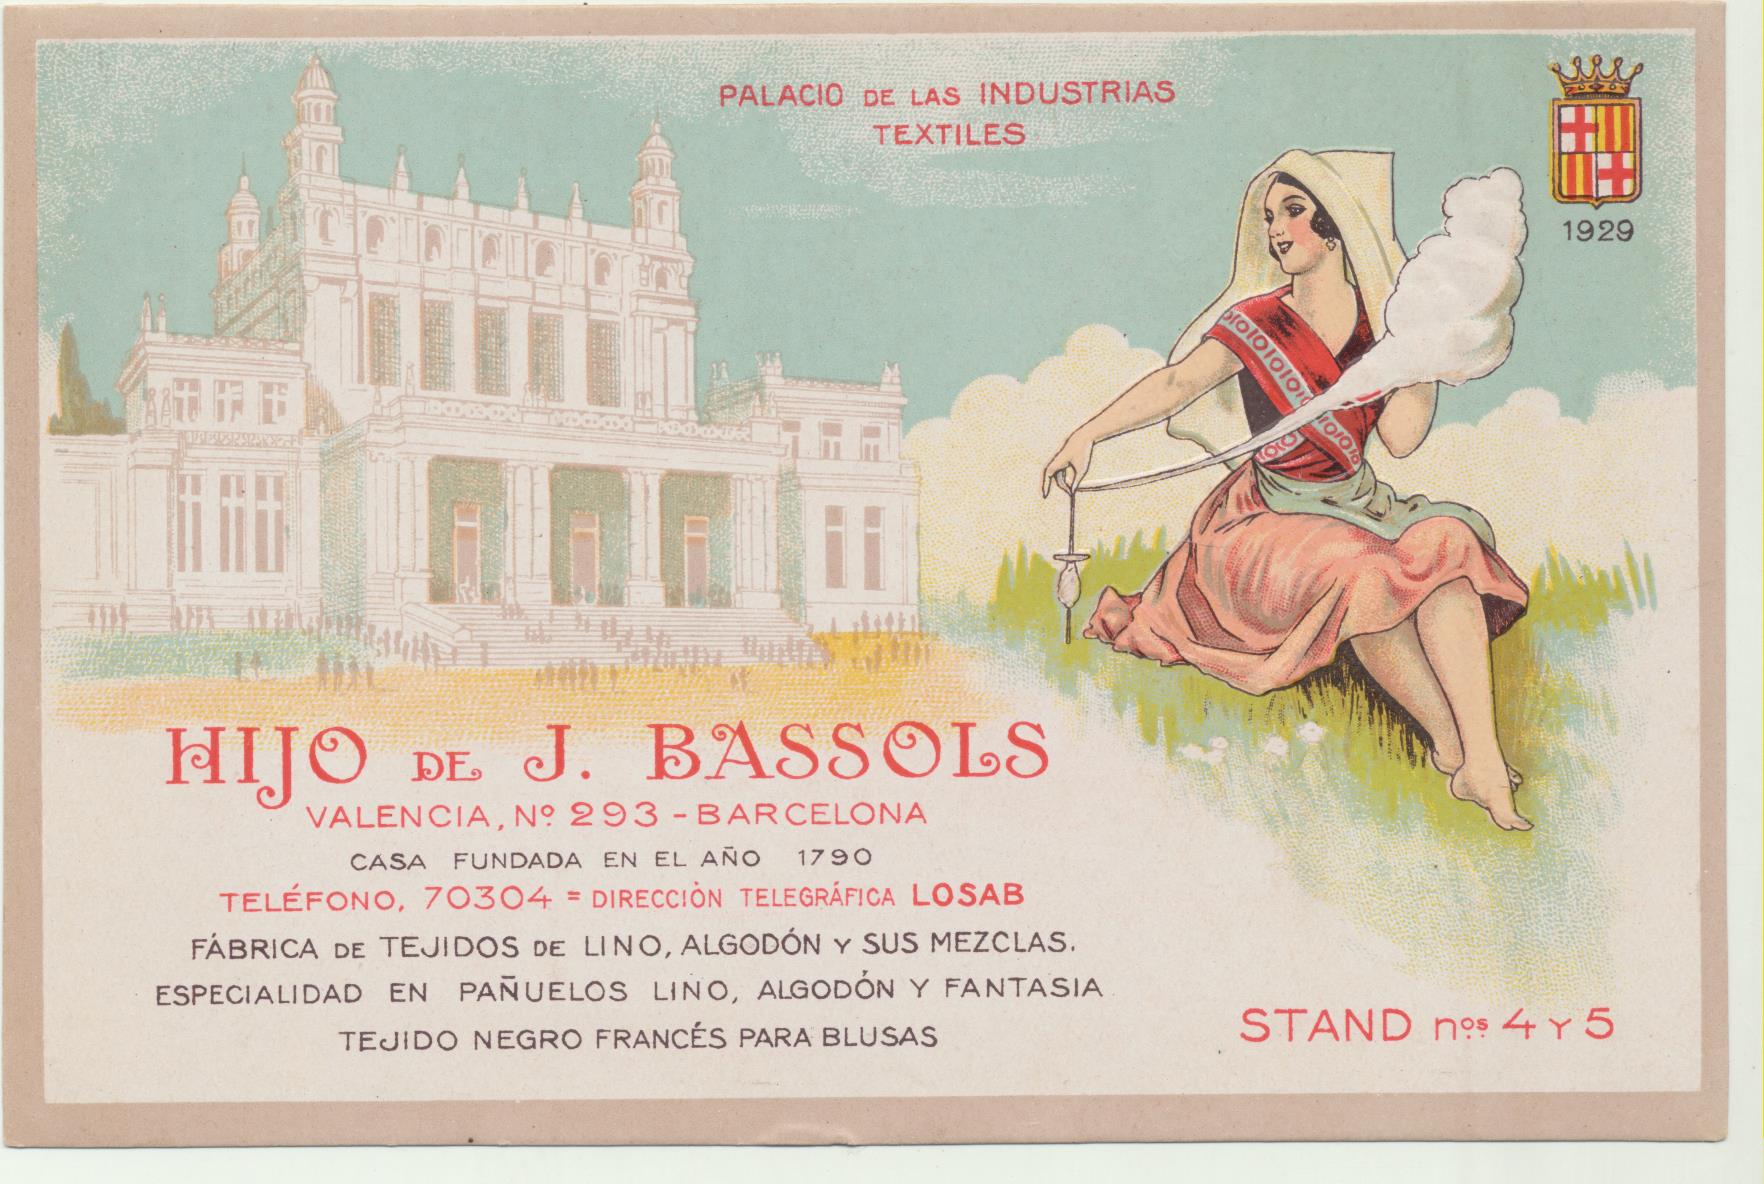 Palacio de las Industrias Textiles. Hijo de J. Bassols. Hilandera en relieve. Barcelona 1929